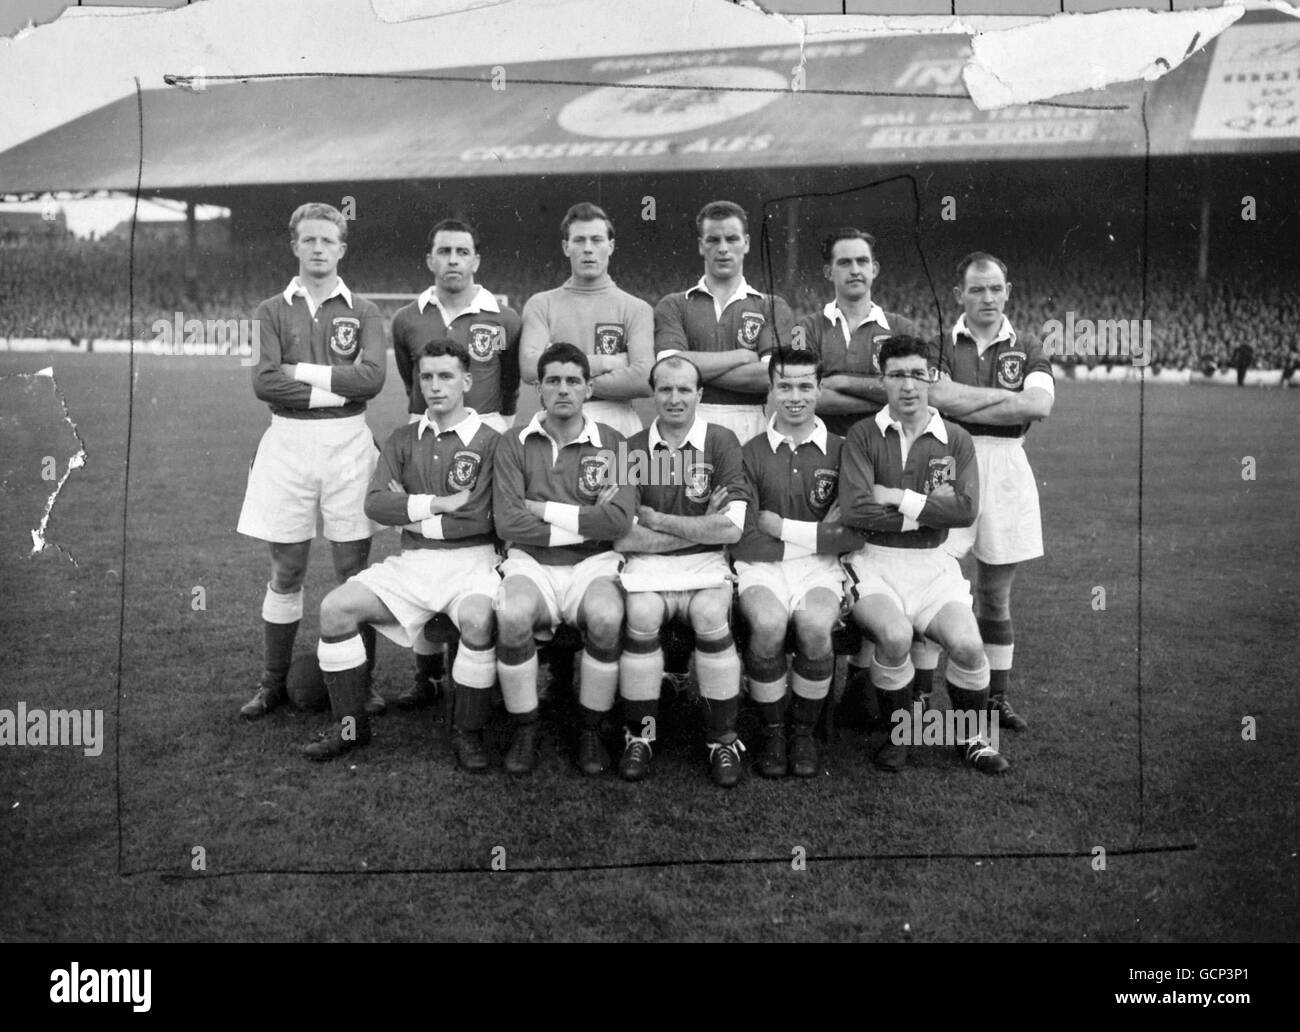 Das walisische Team, das am 22. September im Ninian Park in Cardiff 3-1 an Jugoslawien verlor. Von links nach rechts: Hintere Reihe: I. Allchurch, R. Paul, J. Kelsey, J. Charles, D. Bowen und A. Sherwoof; vordere Reihe: B. Reed, T. Ford, W. Barnes, D. Tapscott und R. Clarke. September 1954 Stockfoto